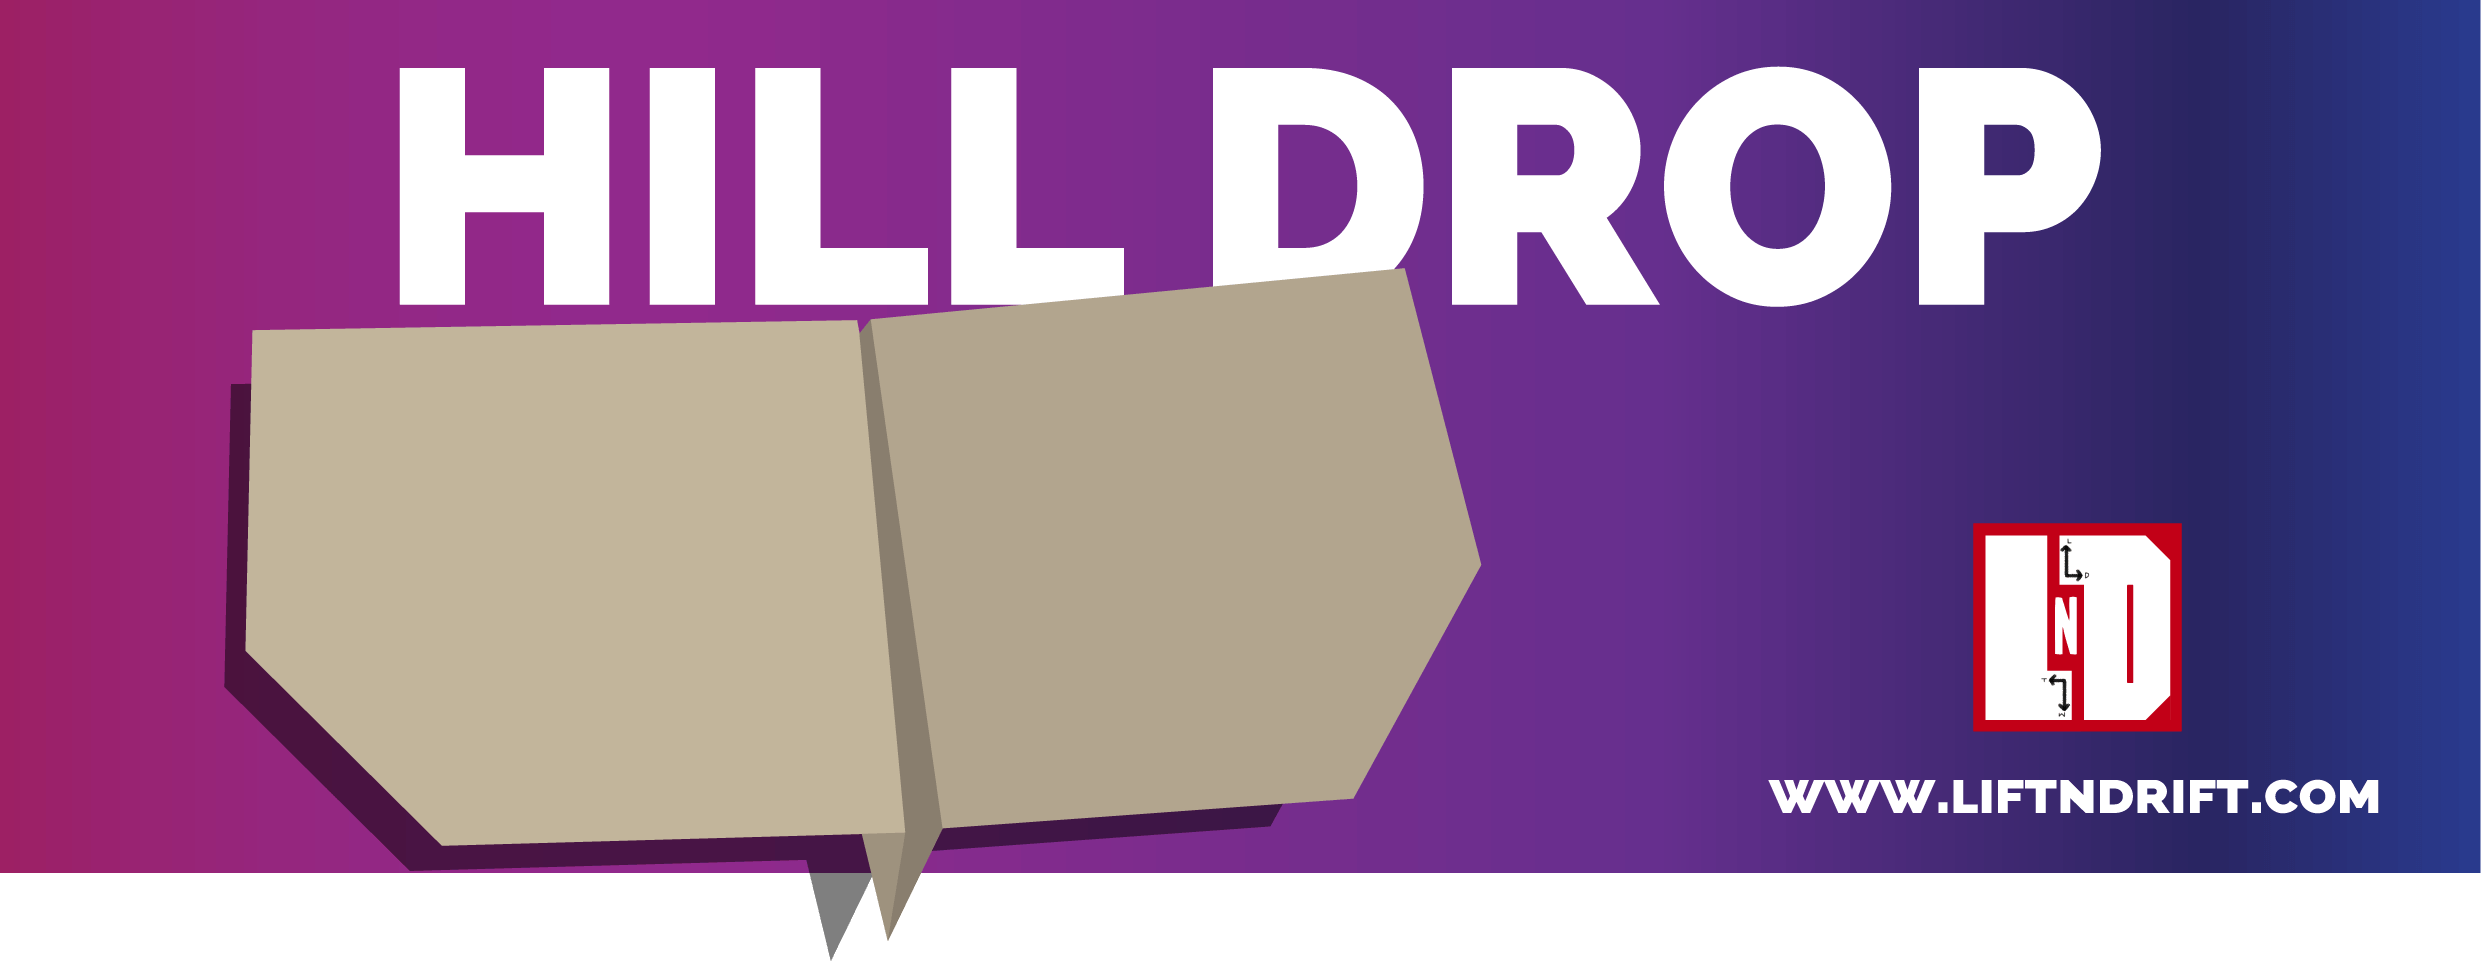 Hill drop